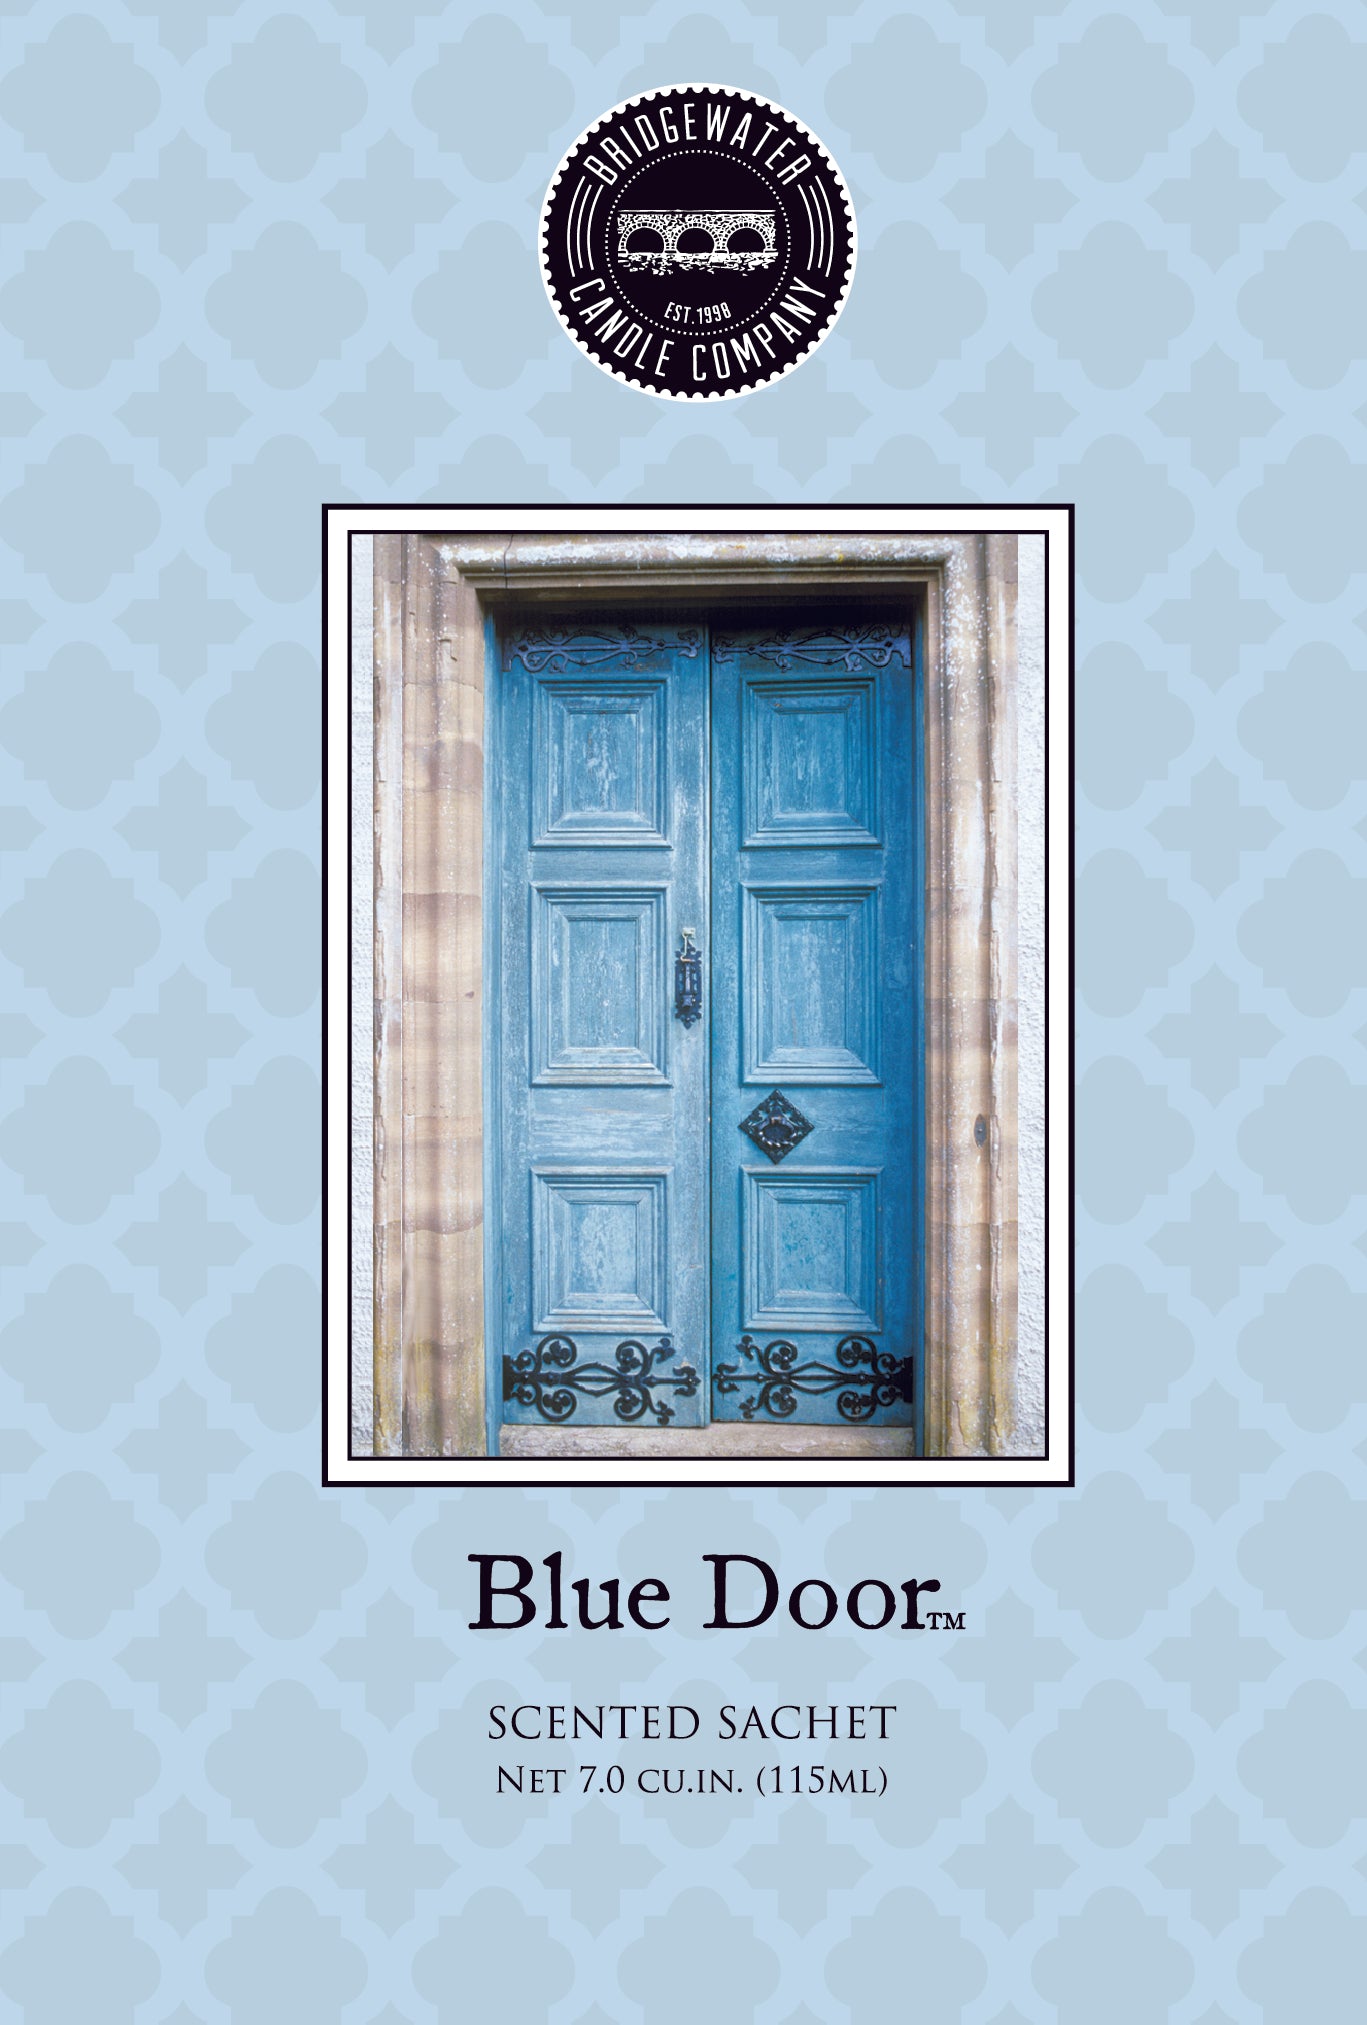 Bridgewater Duftsachet - Blue Door